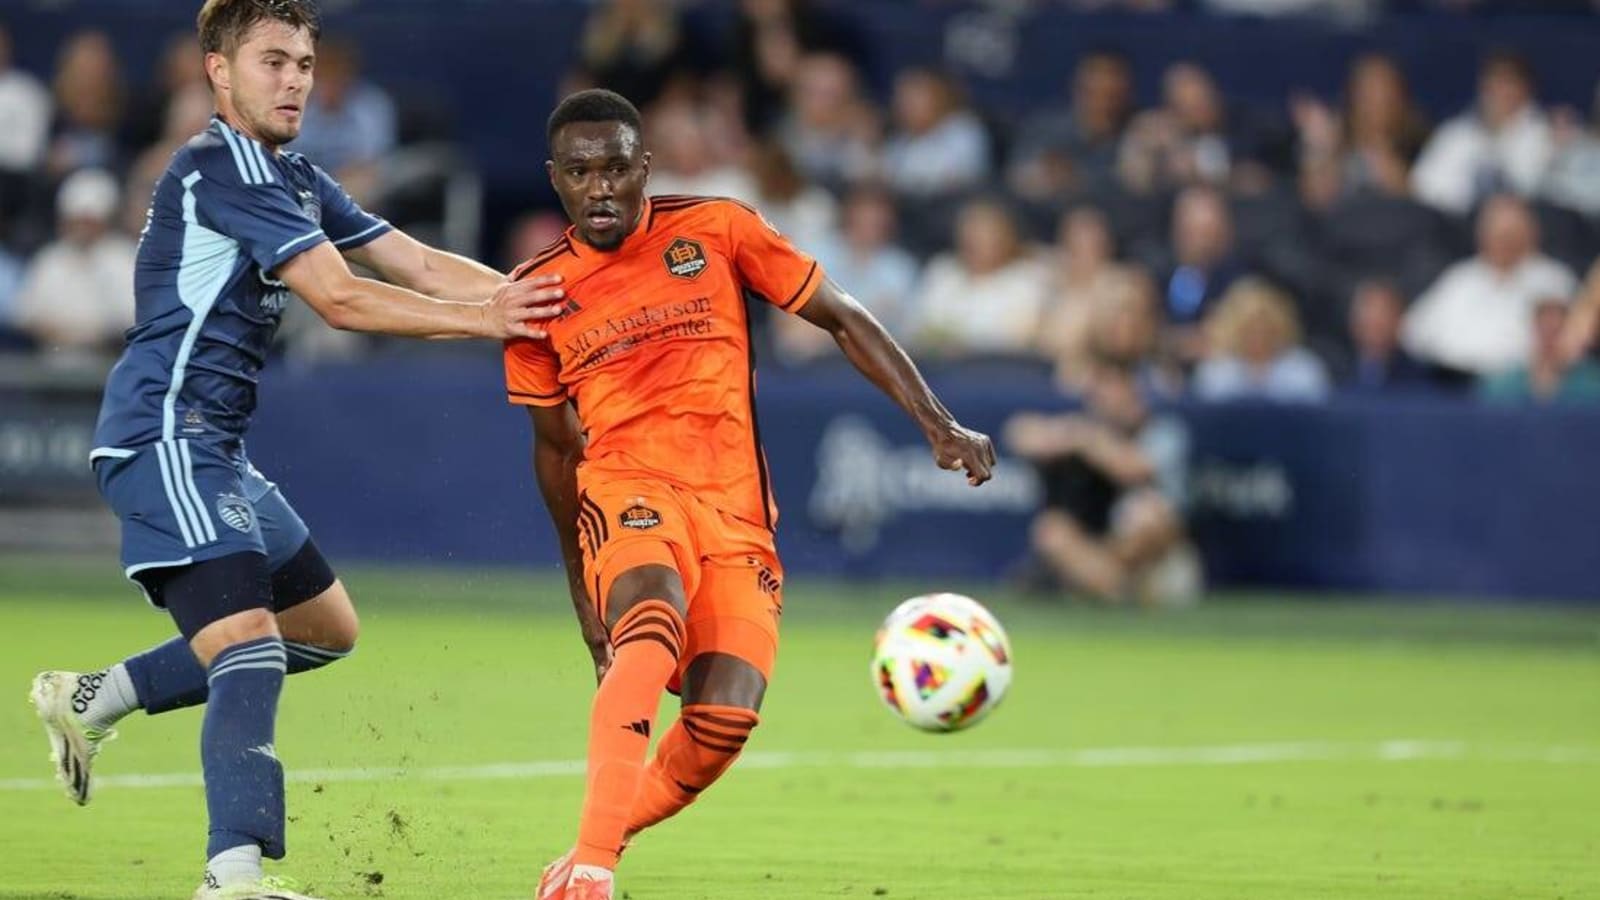 Struggling Dynamo face quick turnaround vs. FC Dallas